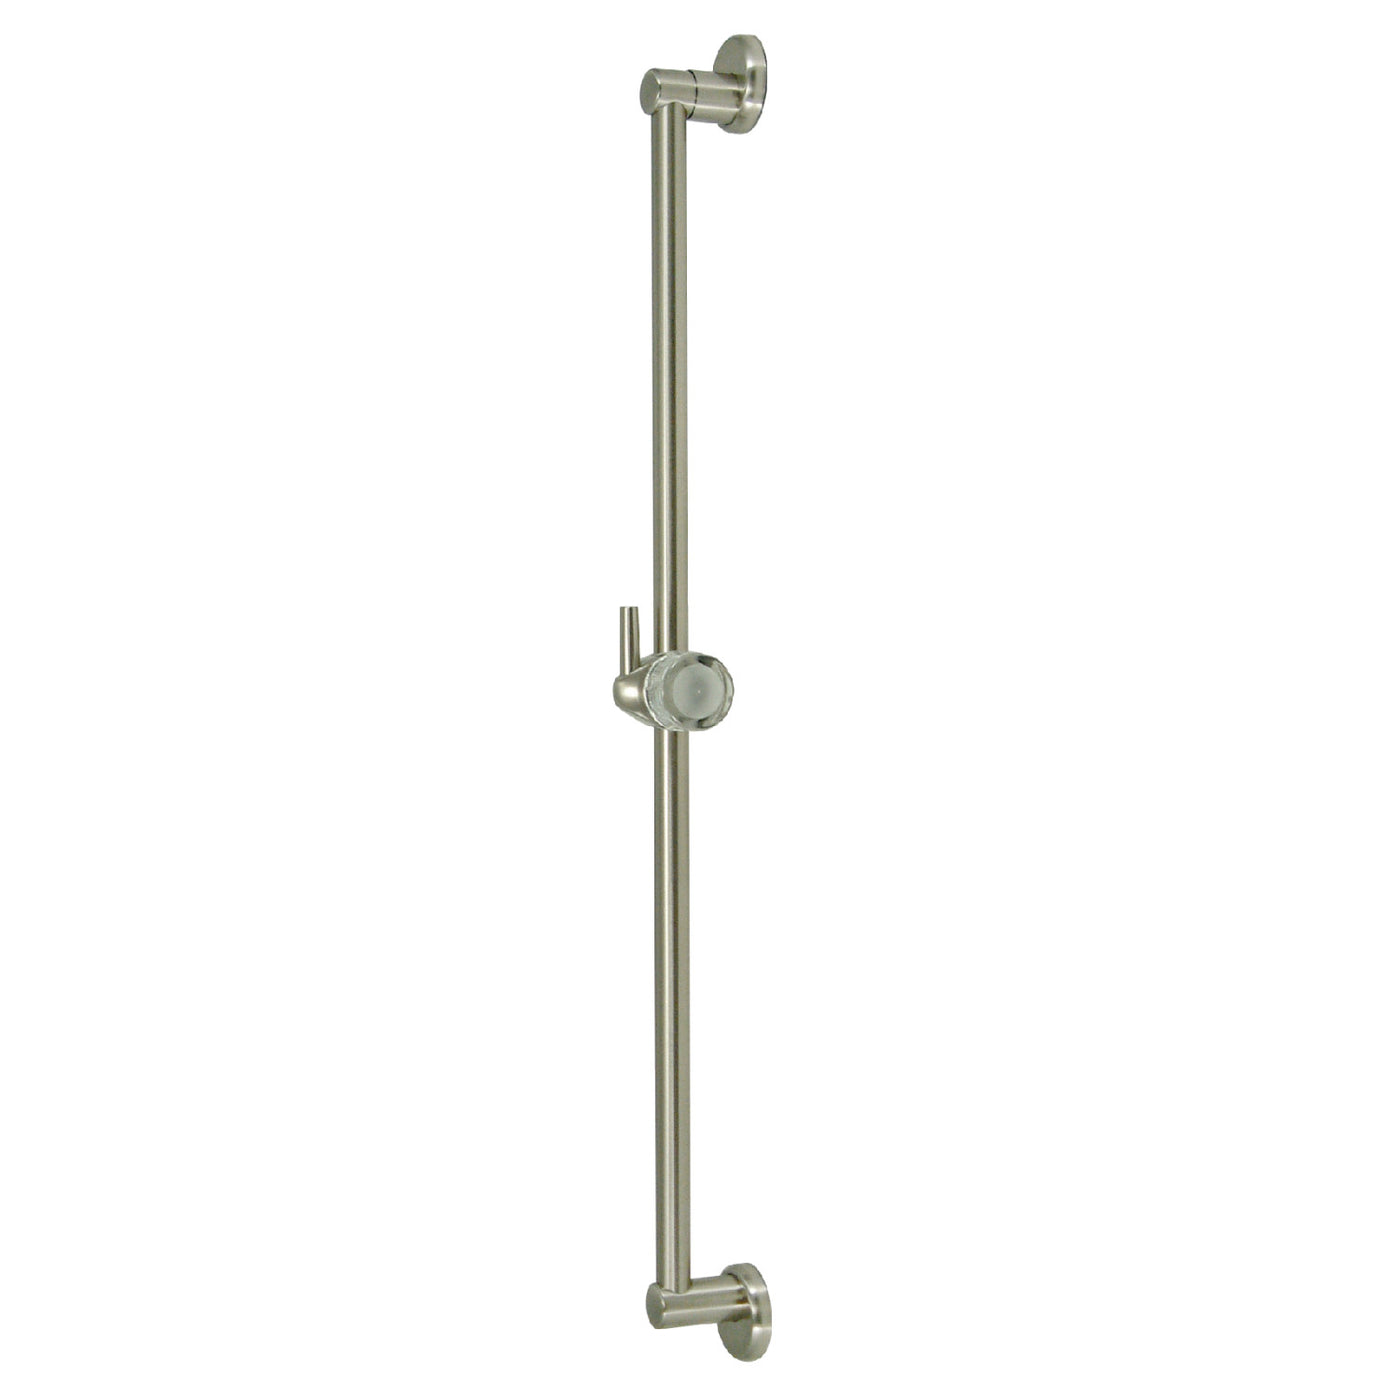 Elements of Design DK180A8 24-Inch Shower Slide Bar with Pin Mount Hook, Brushed Nickel